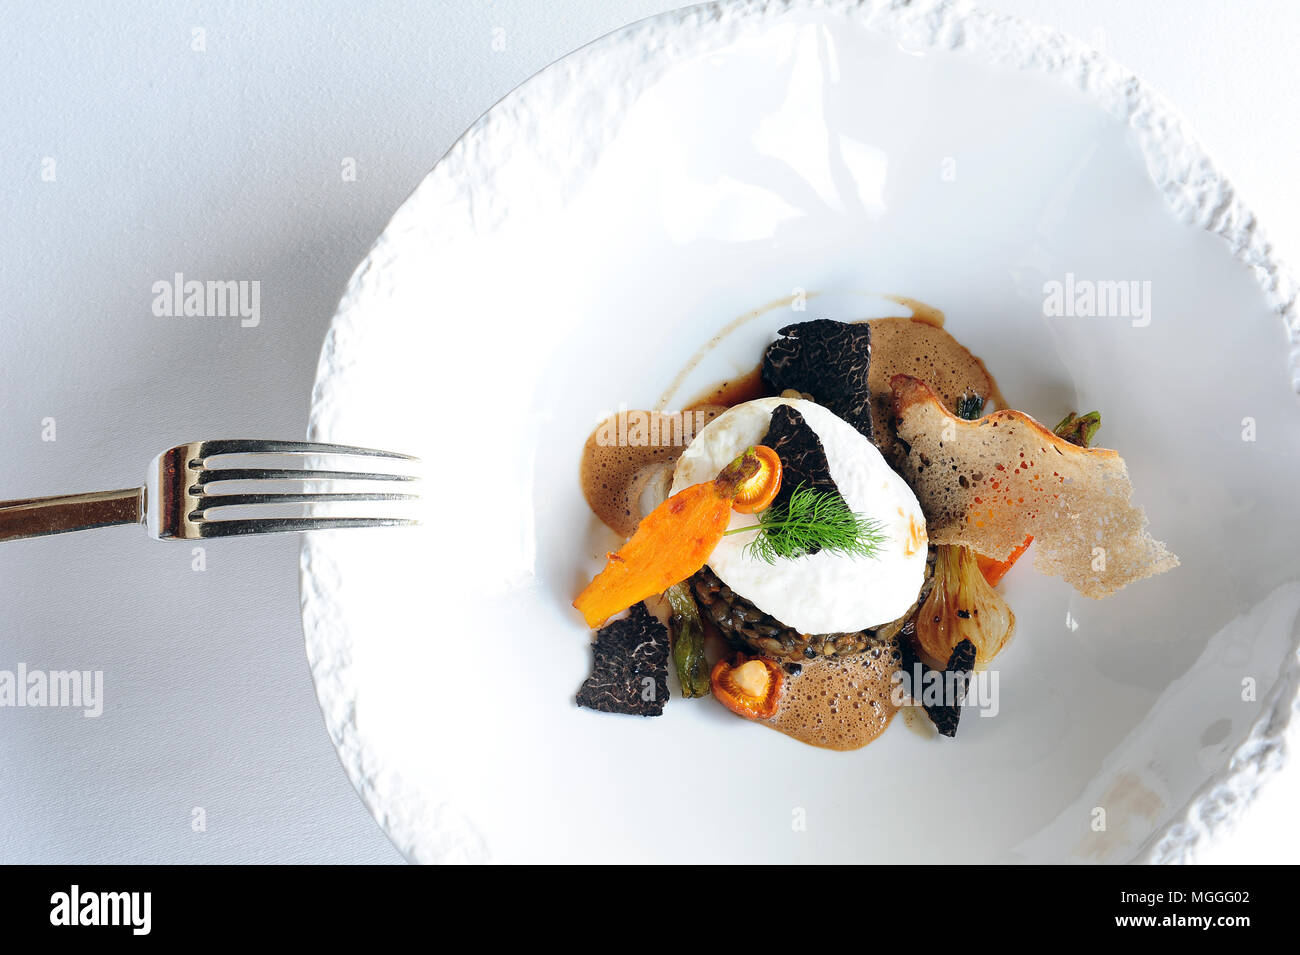 Das mit einem Michelin-Stern ausgezeichnete Küchenchef Régis Marcon' ragoût de lentilles Vertes de Puy avec Truffes et oeuf de Poule fumé' Stockfoto